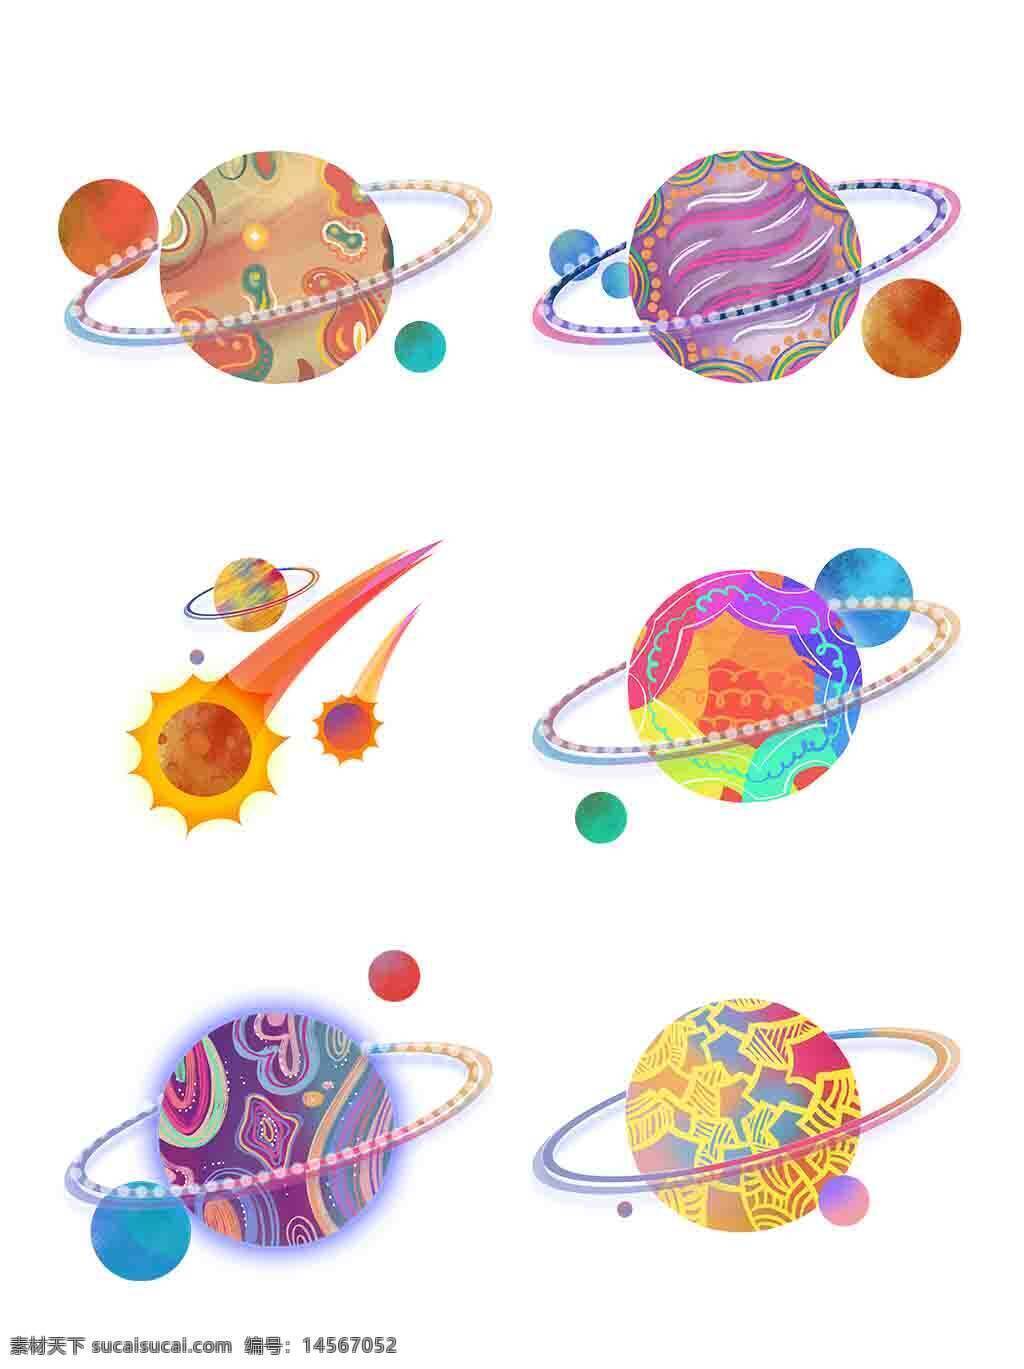 手绘卡通星球元素 手绘星球 卡通星球 天体元素 彩色星球